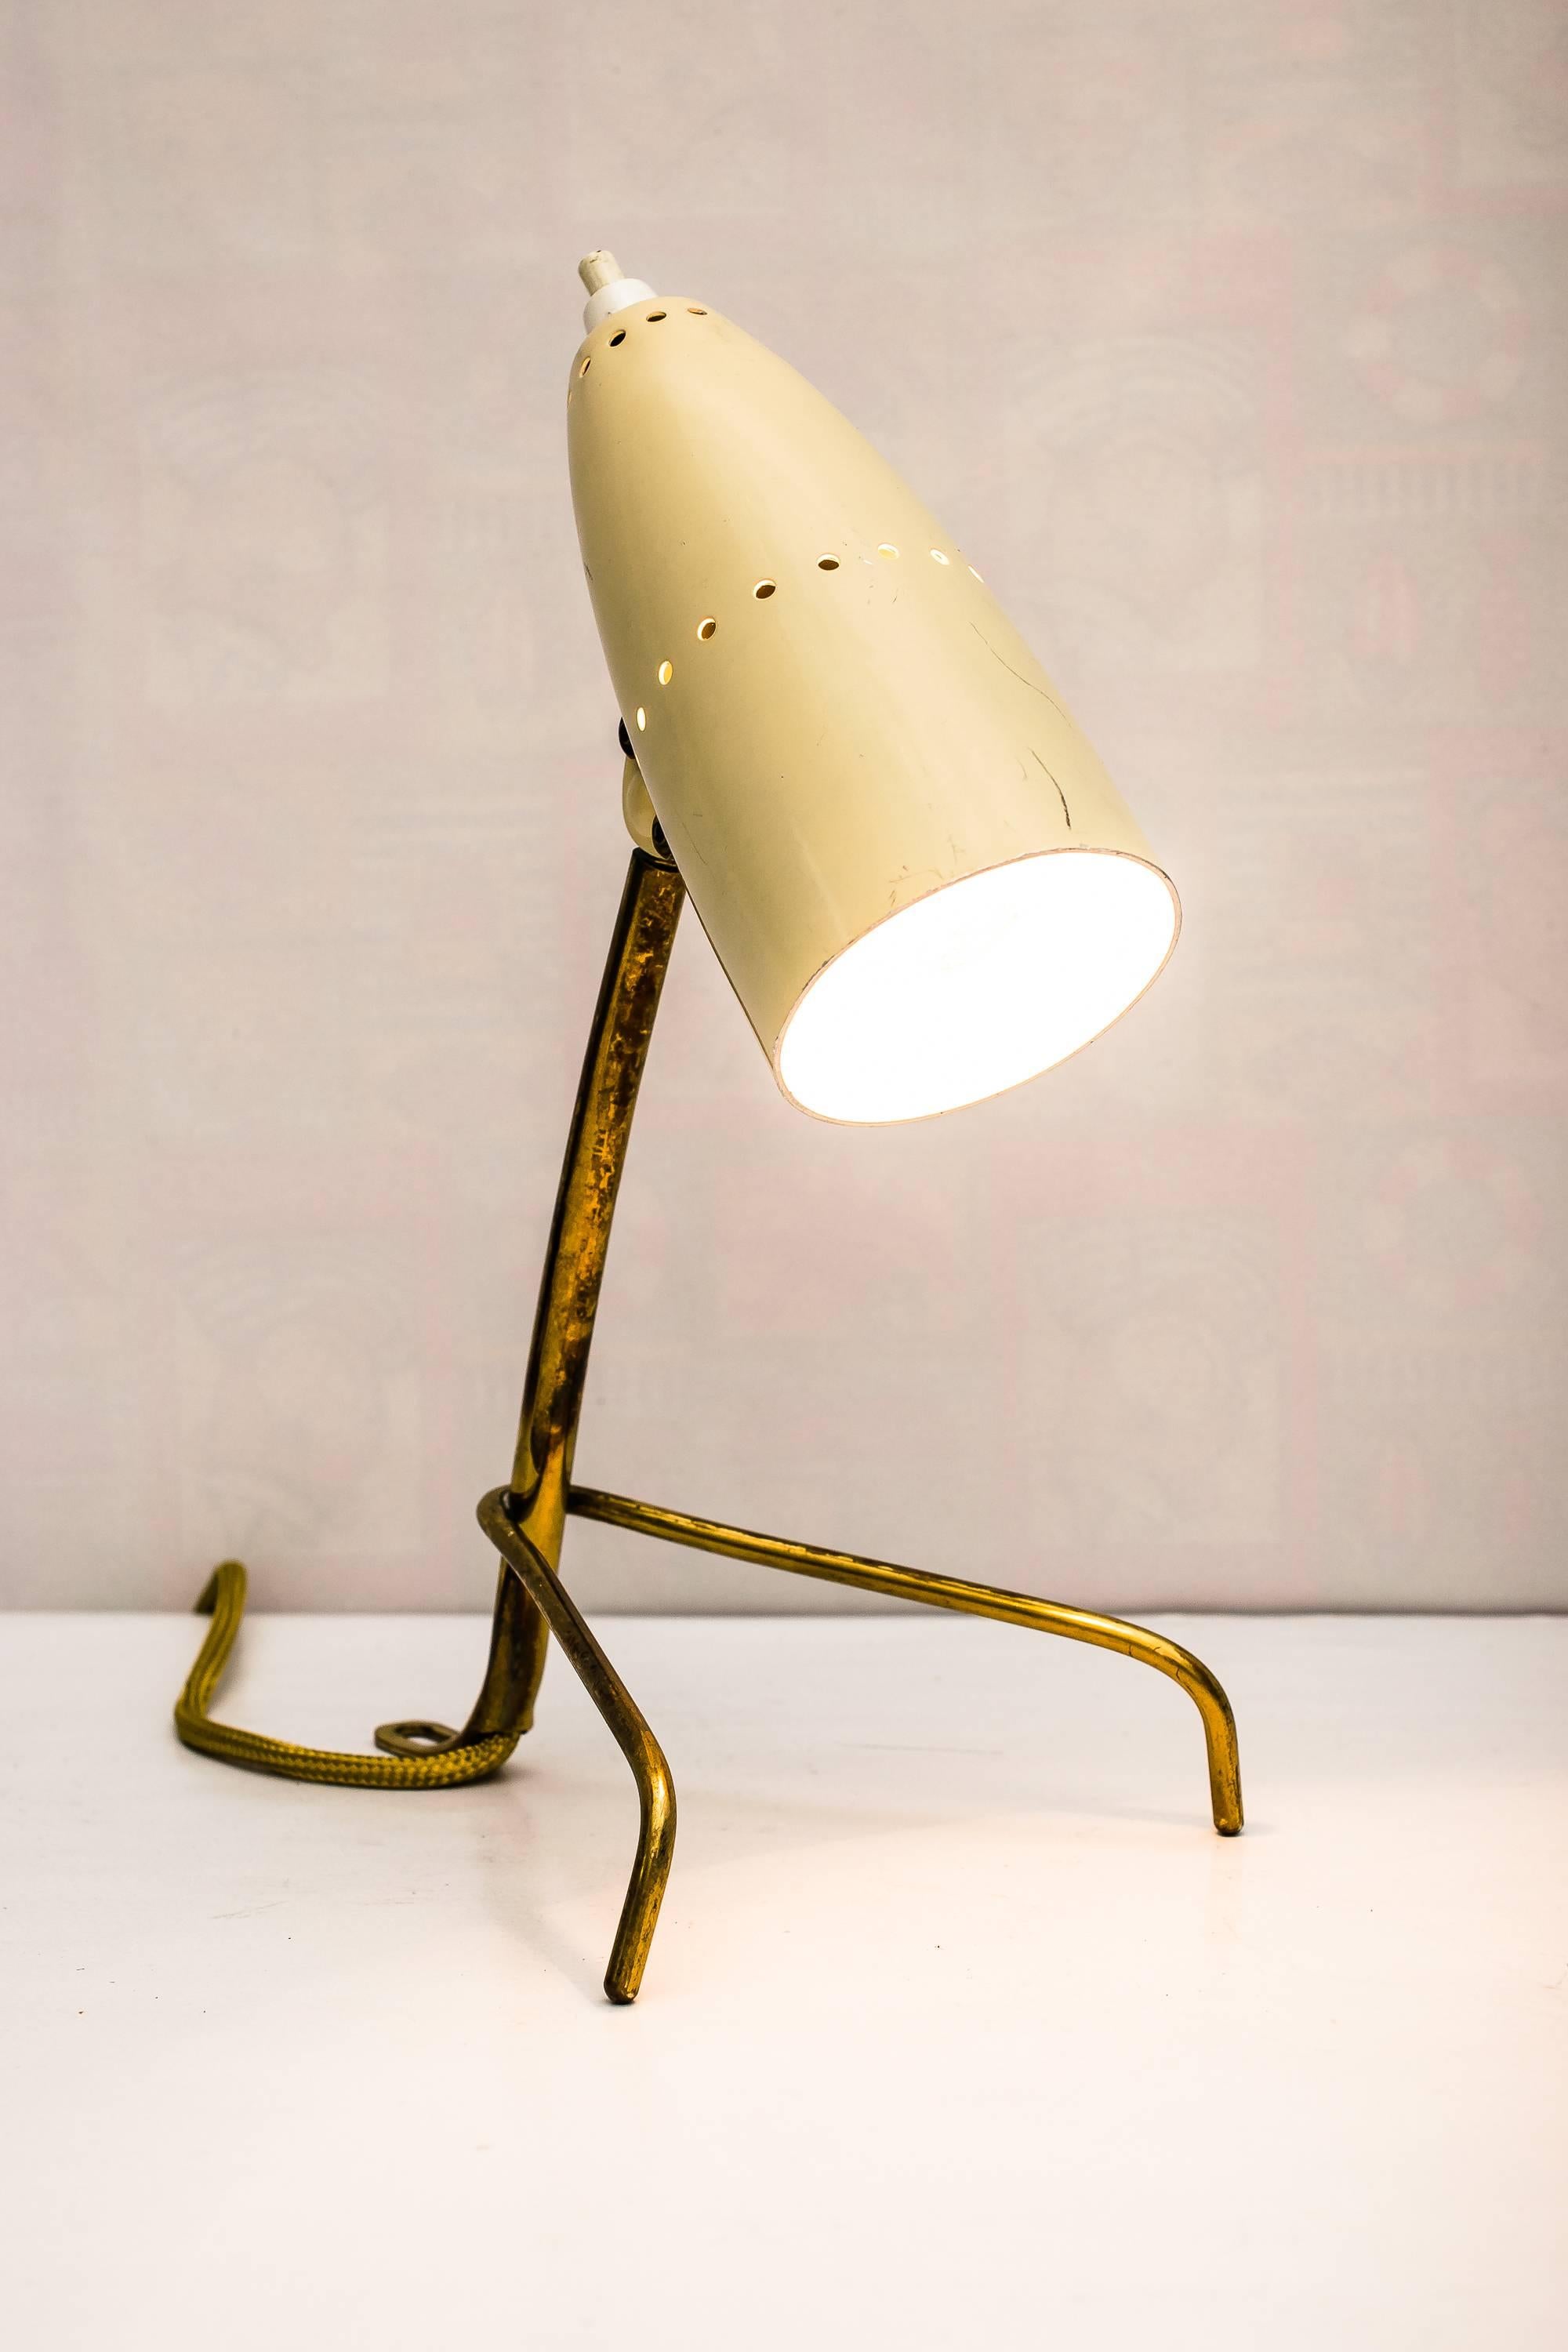 Rupert Nikoll table lamp, circa 1960s
Original condition.